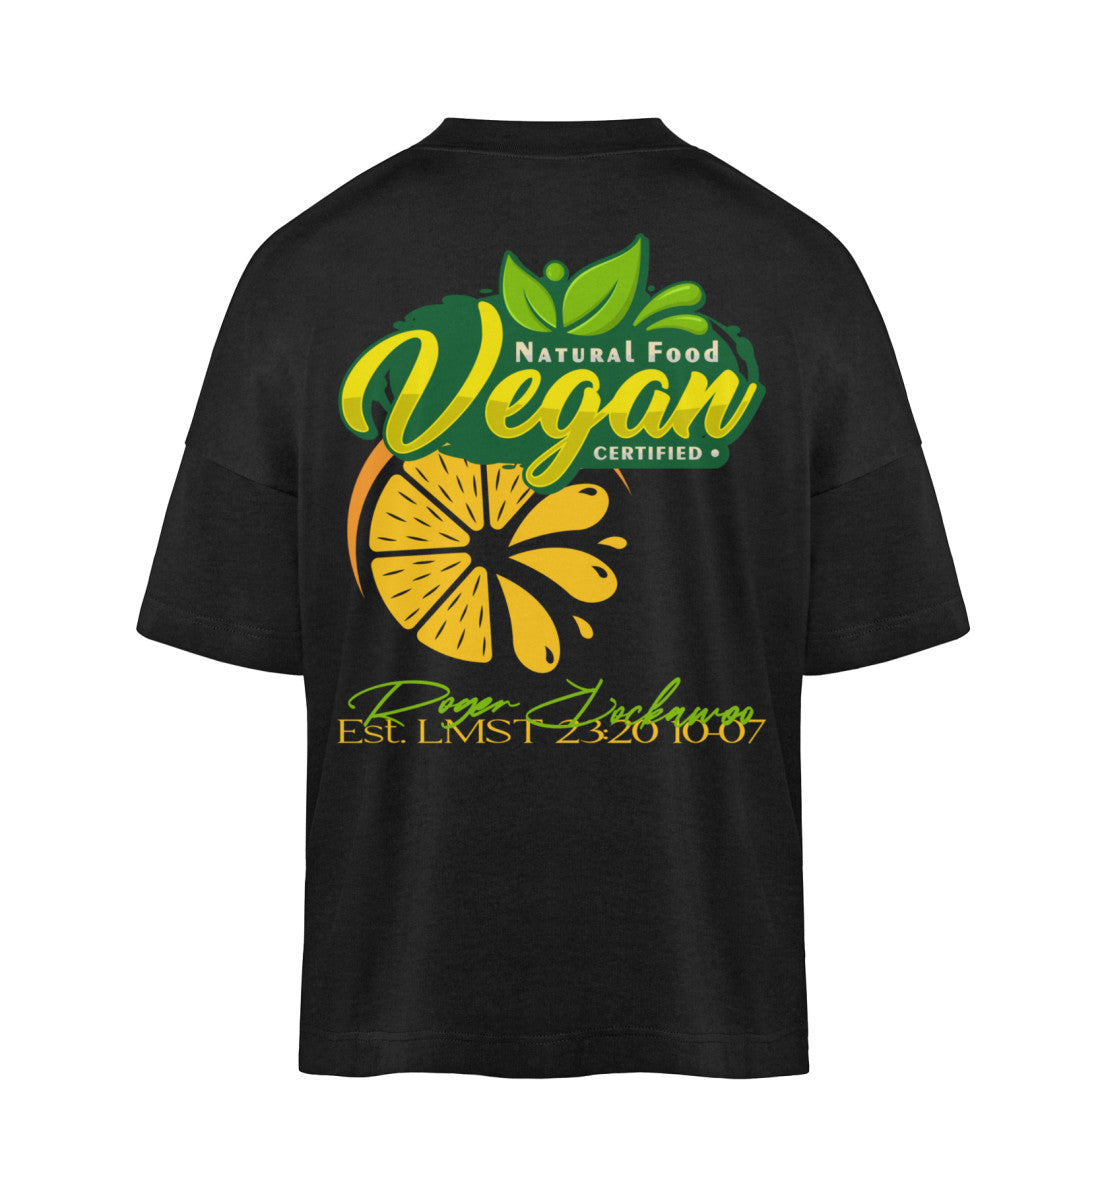 Schwarzes T-Shirt Unisex Oversize Fit für Frauen und Männer bedruckt mit dem Design der Roger Rockawoo Kollektion vegan as